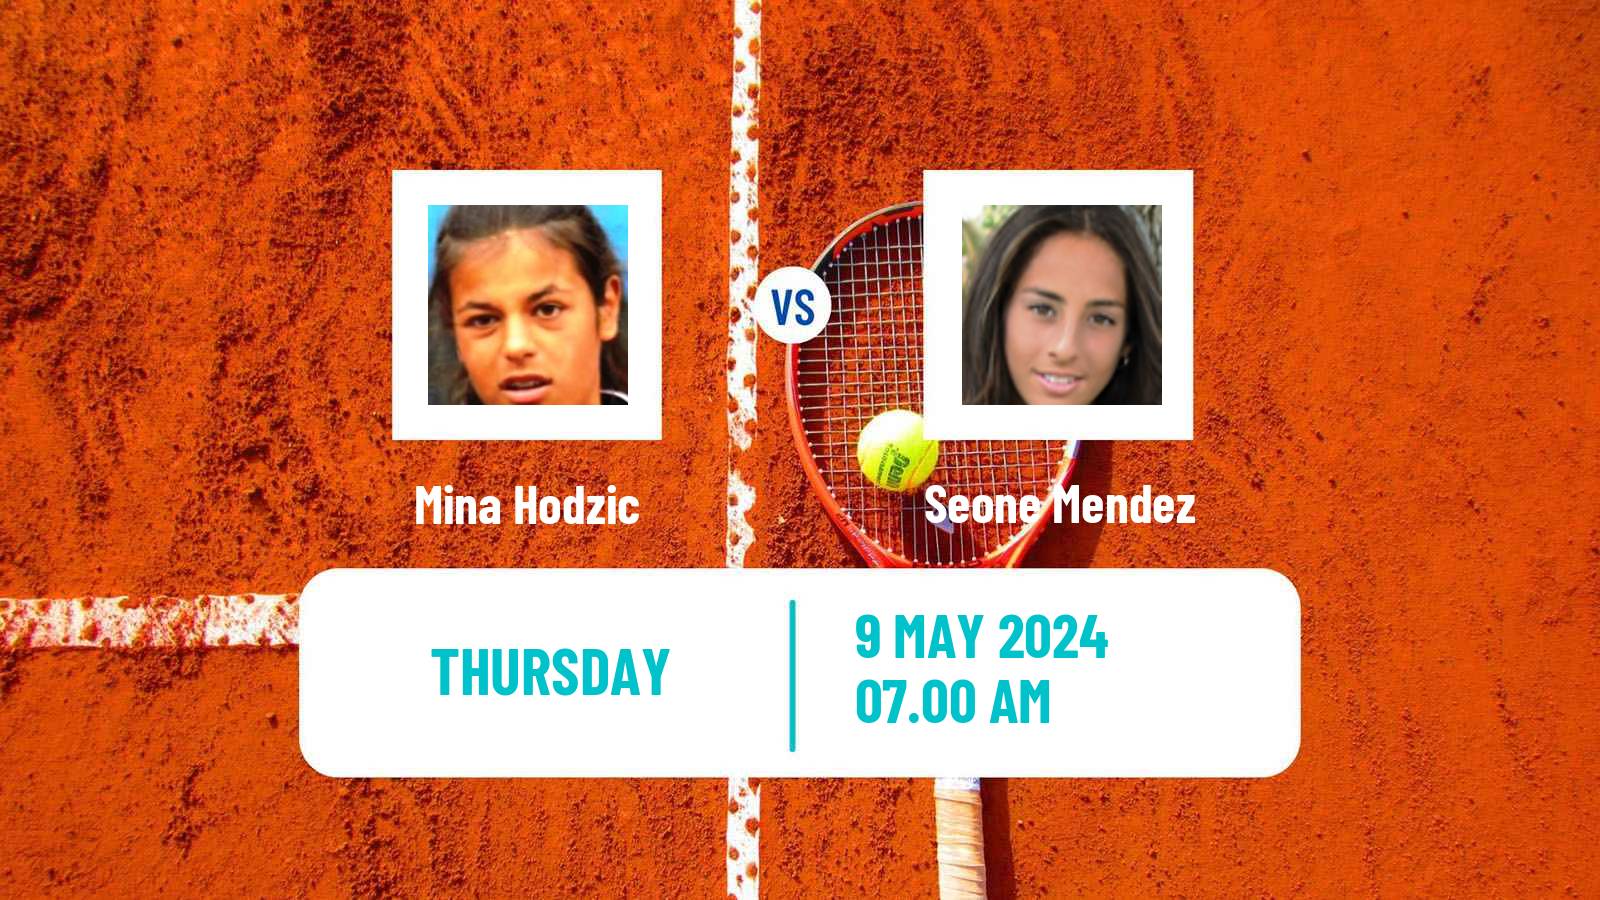 Tennis ITF W35 Platja D Aro Women Mina Hodzic - Seone Mendez